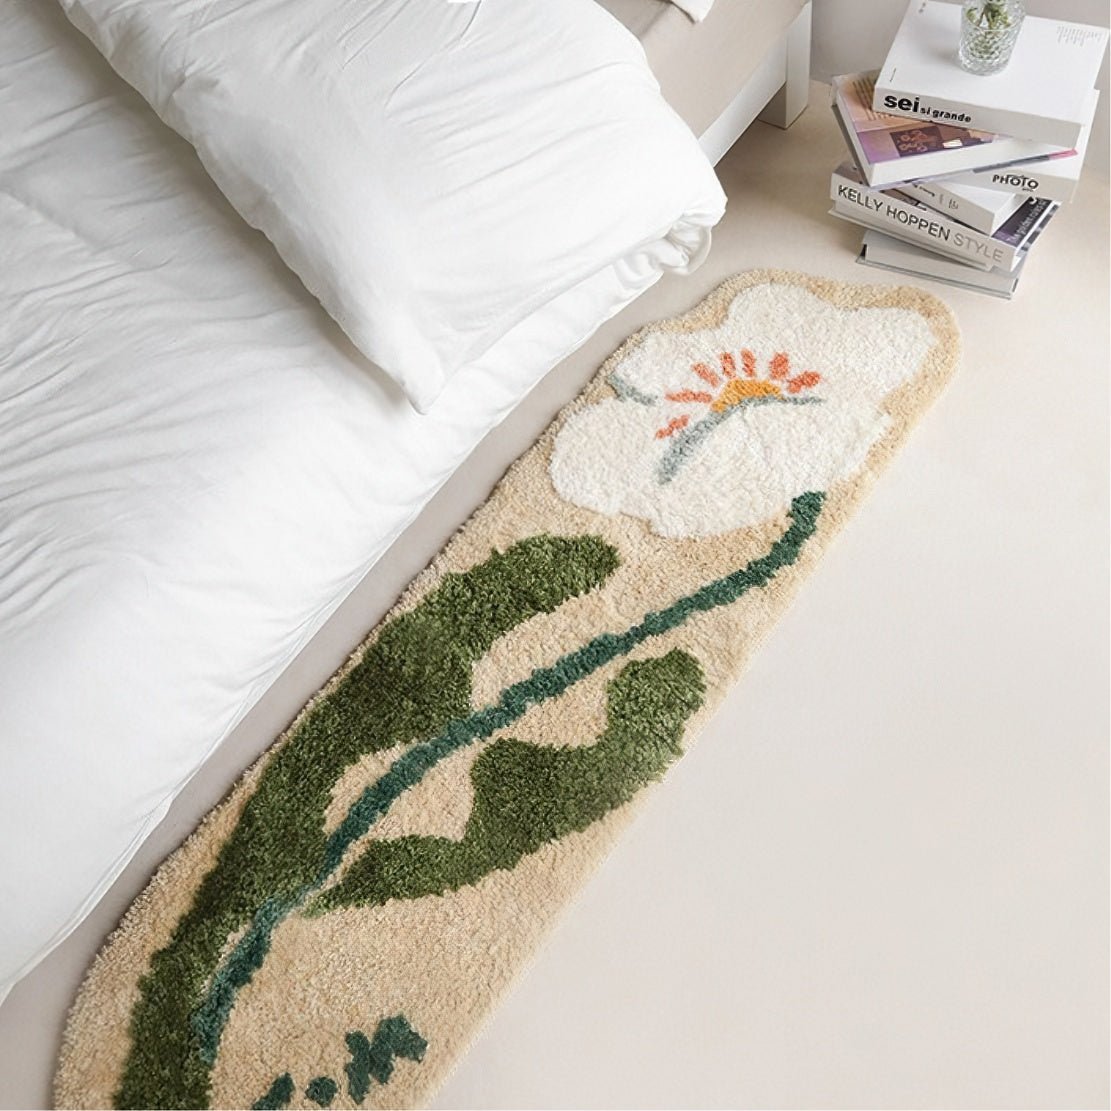 Elegant bedside flower floor rug.